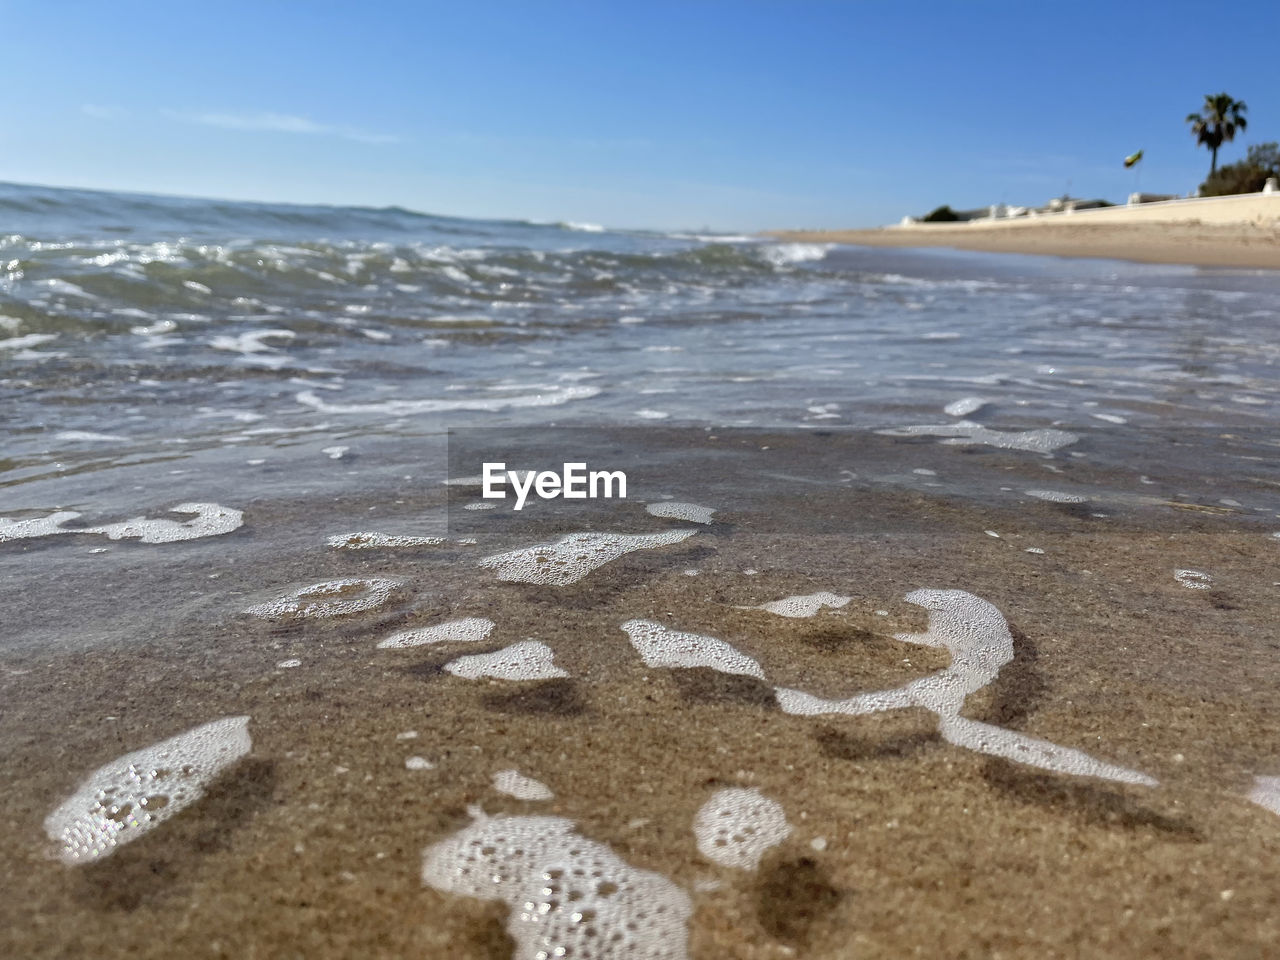 SCENIC VIEW OF BEACH